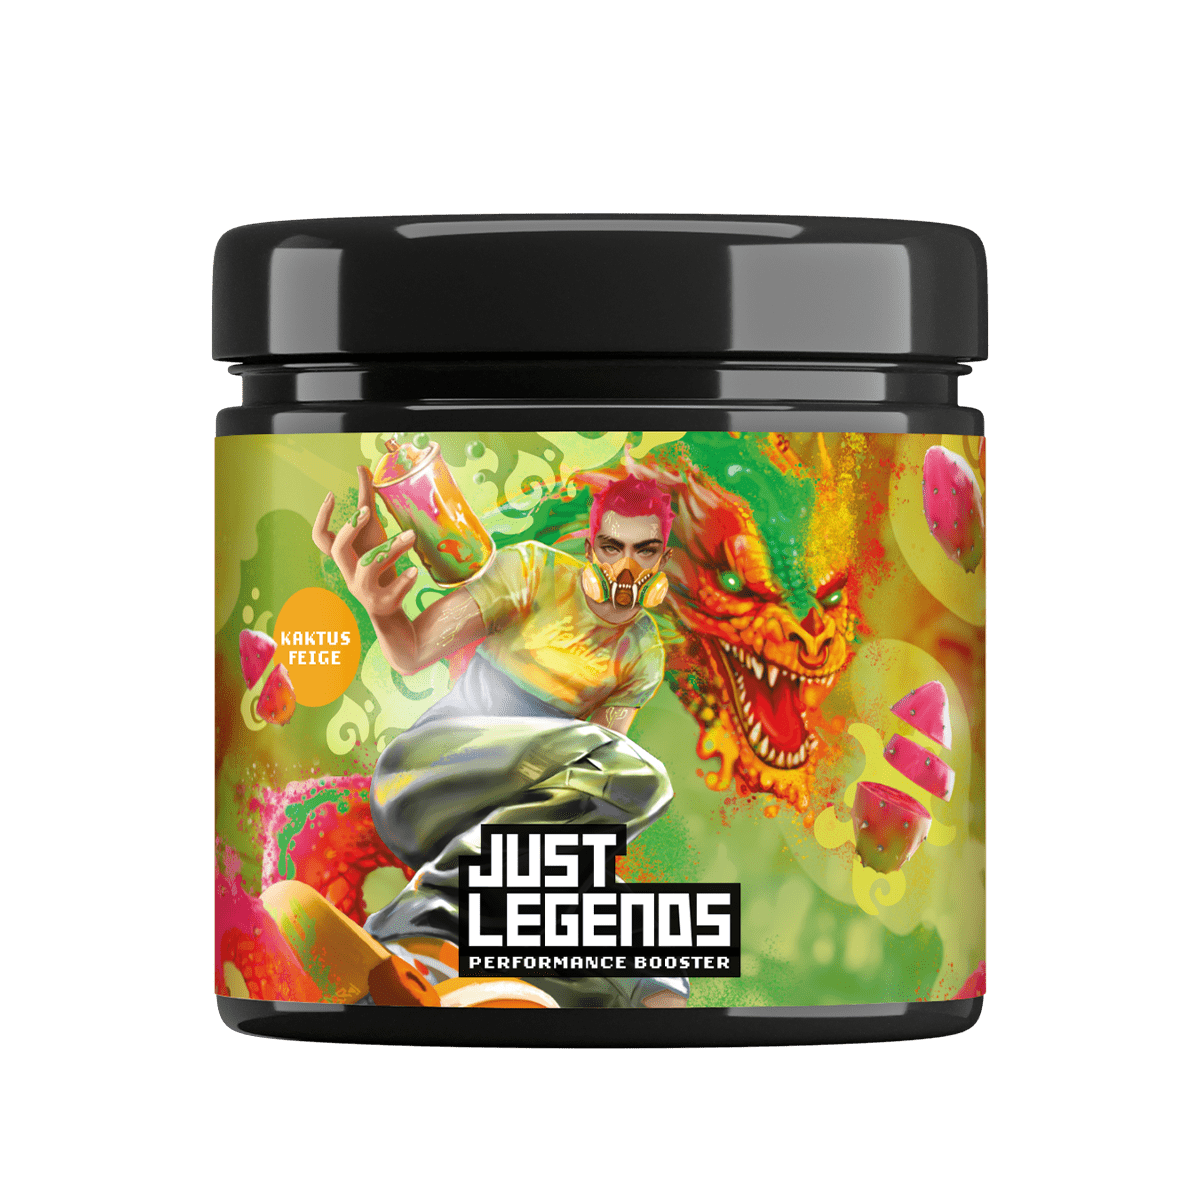 Just Legends Performance Booster | Funktionaler, veganer Cross Sell auf Pulverbasis ohne Zucker, mit wenig Kalorien, vielen Vitaminen und natürlichen Aromen.